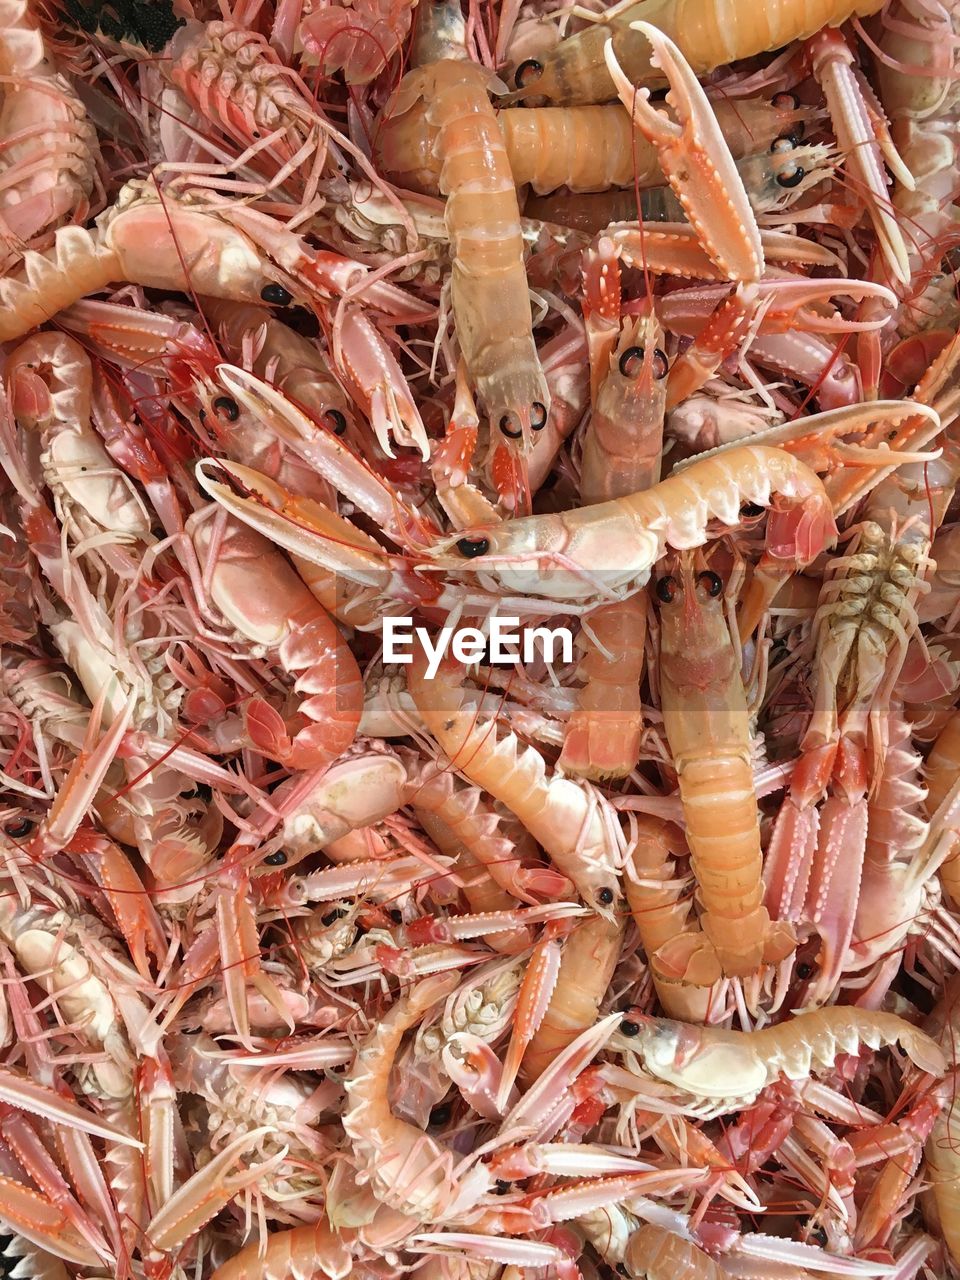 Full frame shot of shrimps for sale in market